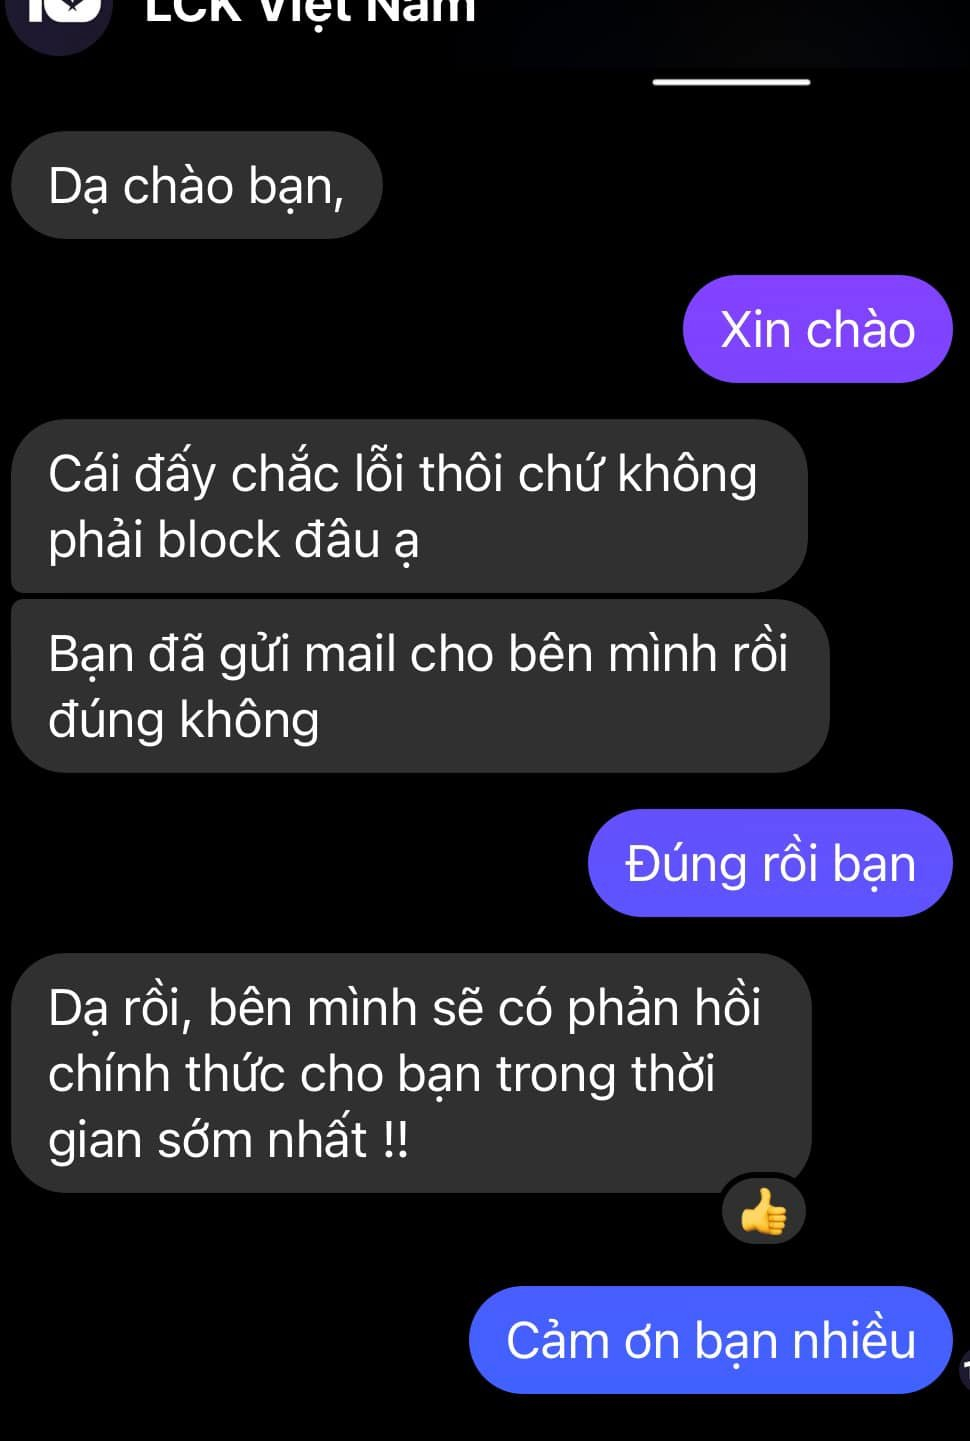 LCK Tiếng Việt bị ‘bóc phốt’ vì đi ‘mượn’ bản dịch của người khác về đăng trên YouTube